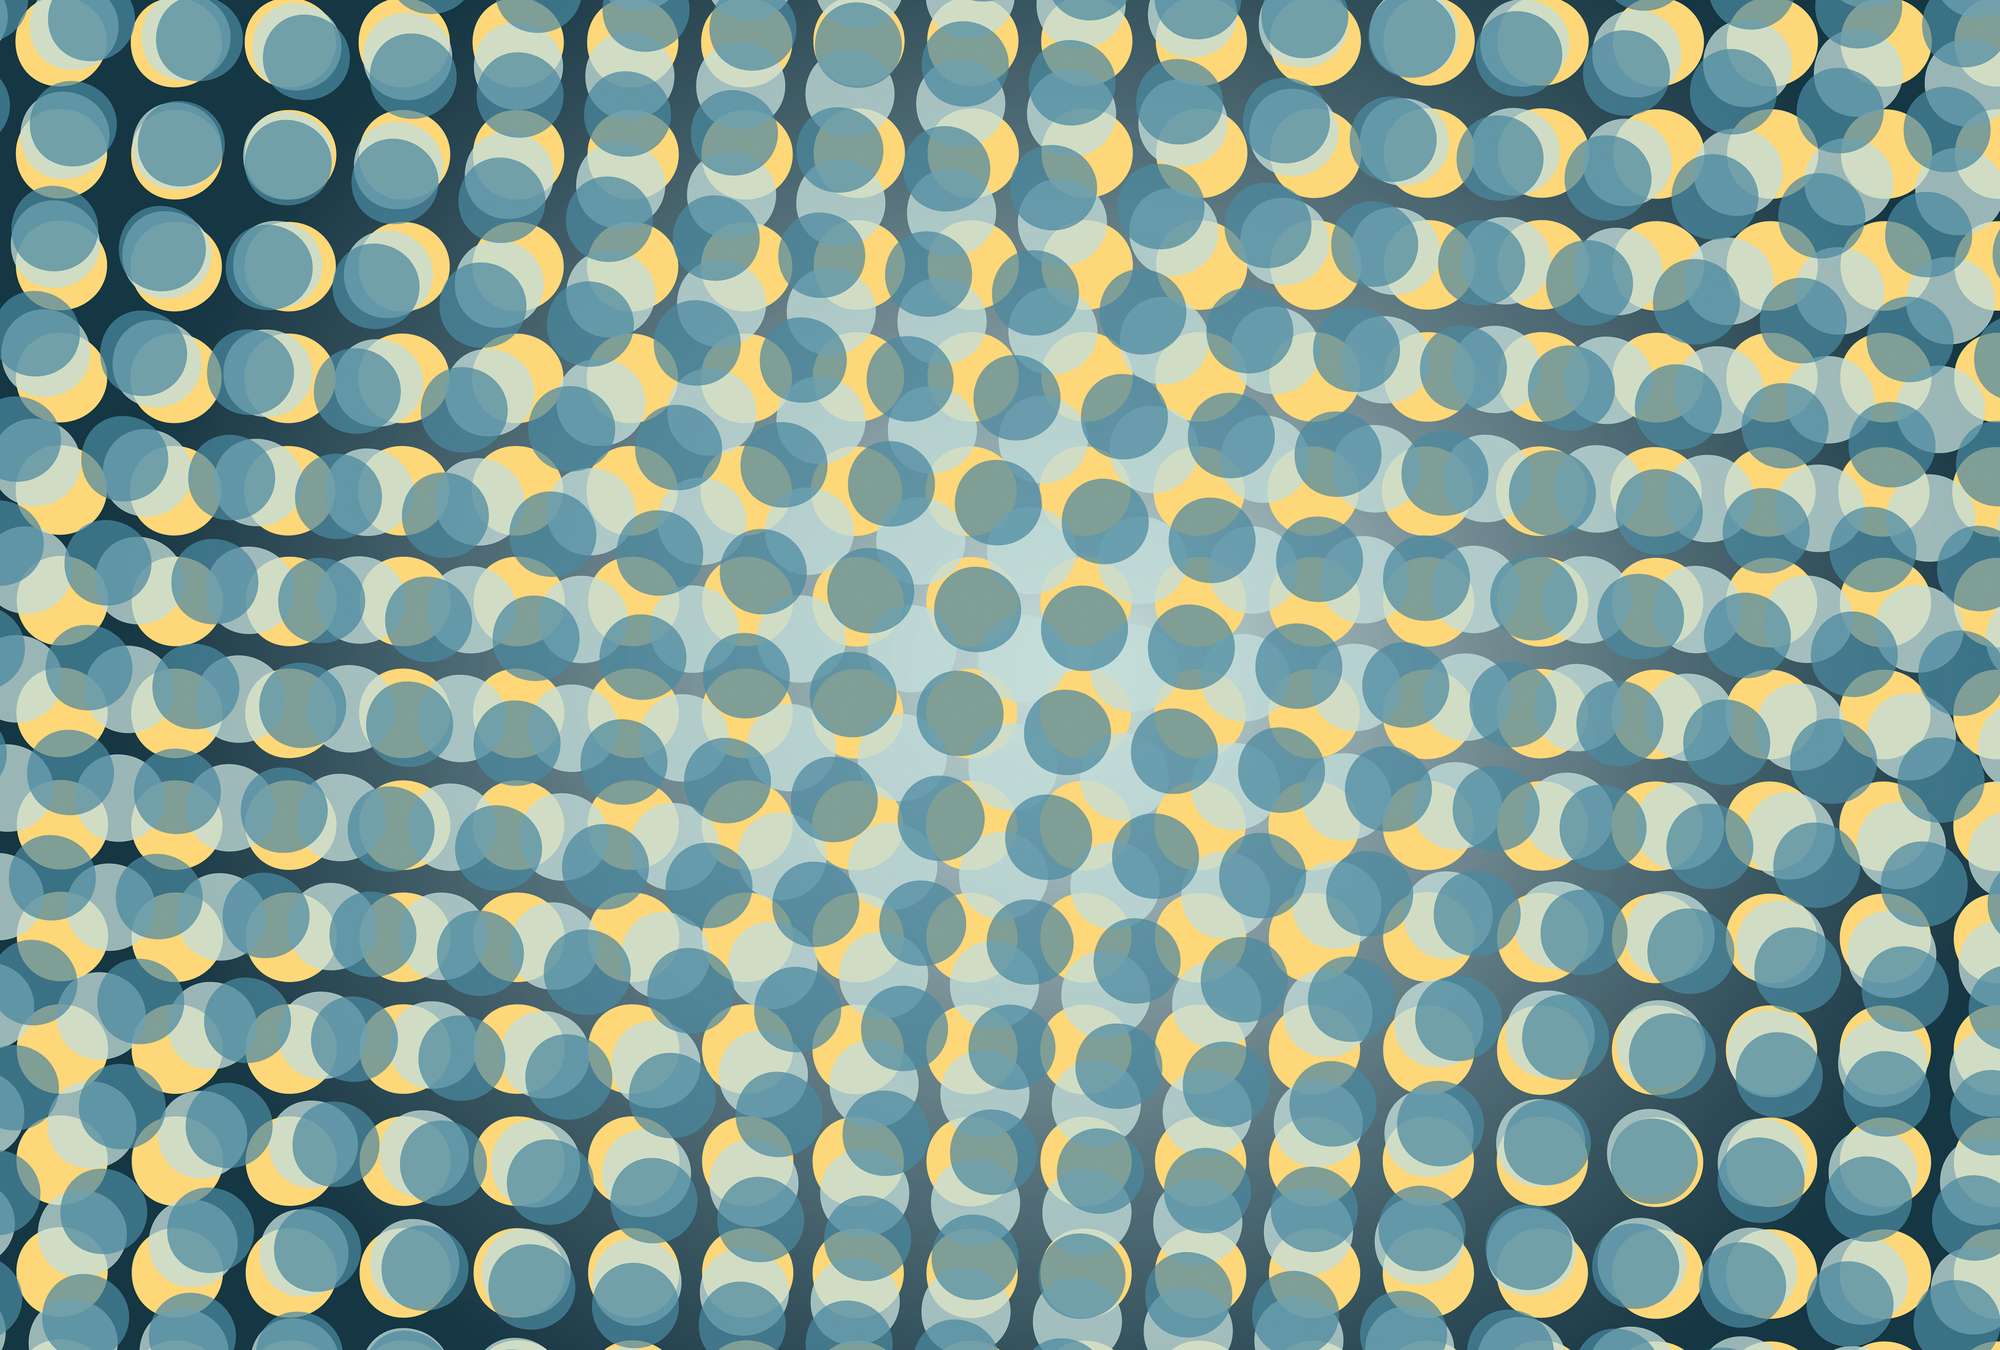             Fototapete mit 3D-Effekt – Punkte im Wellendesign
        